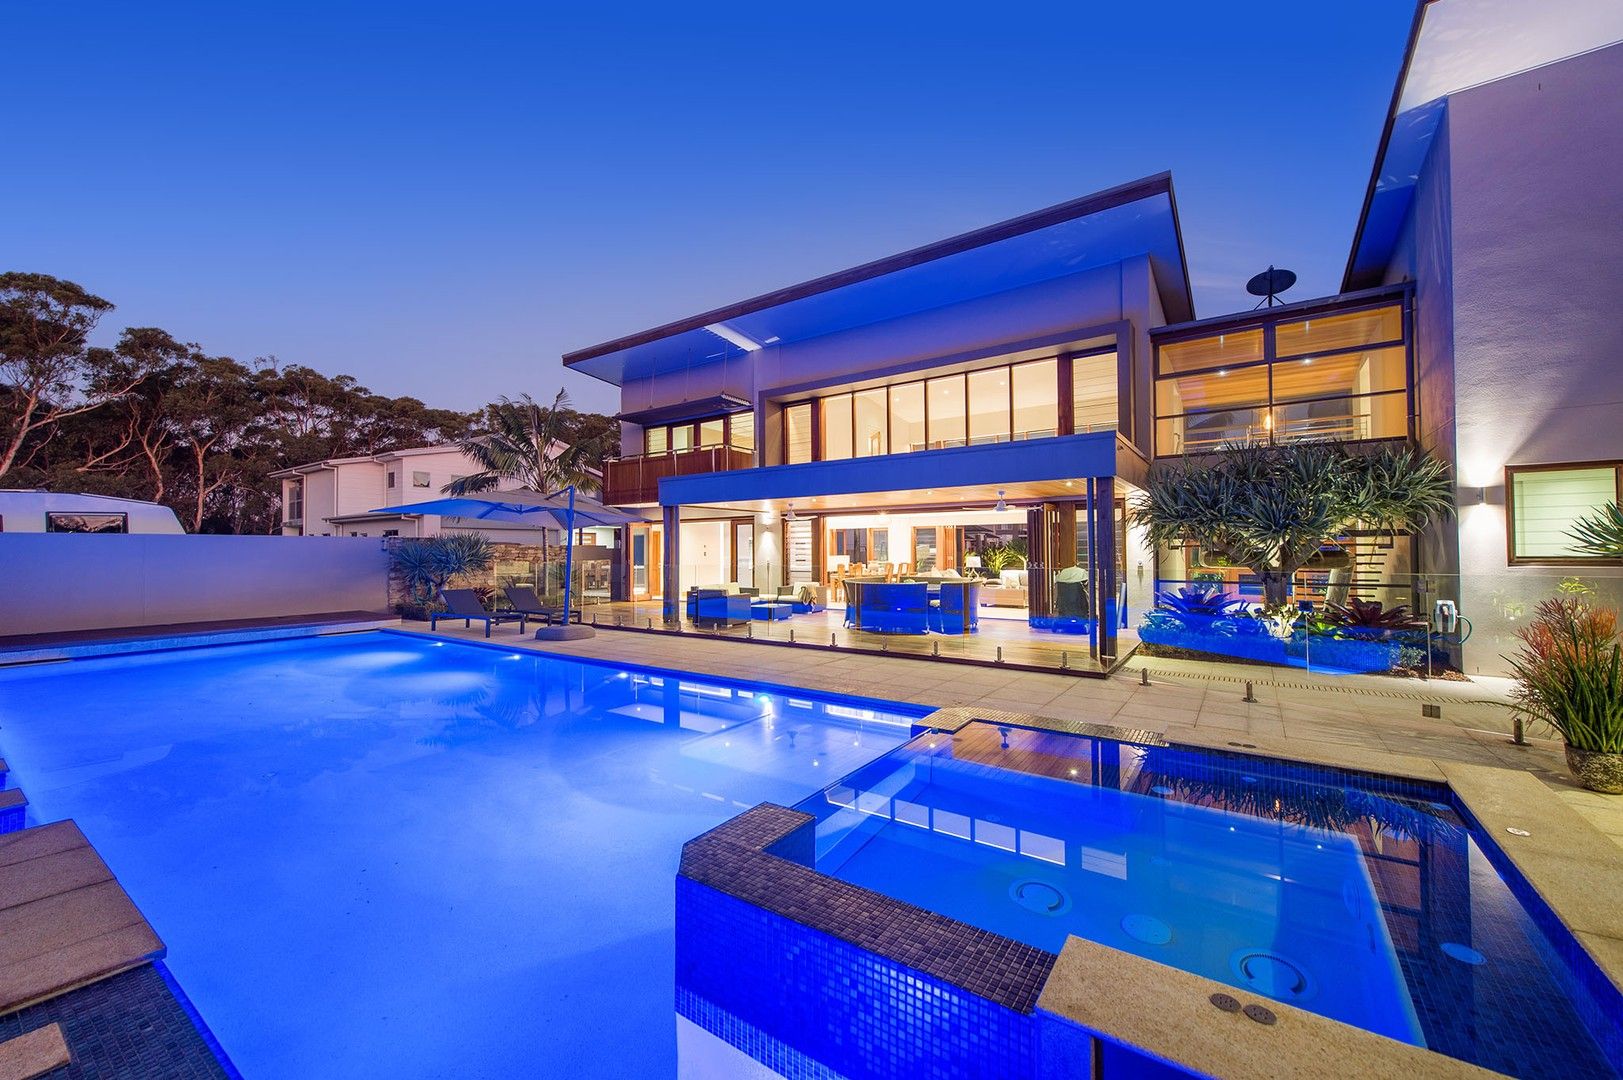 4 bedrooms House in 3 Beach Break Court BONNY HILLS NSW, 2445